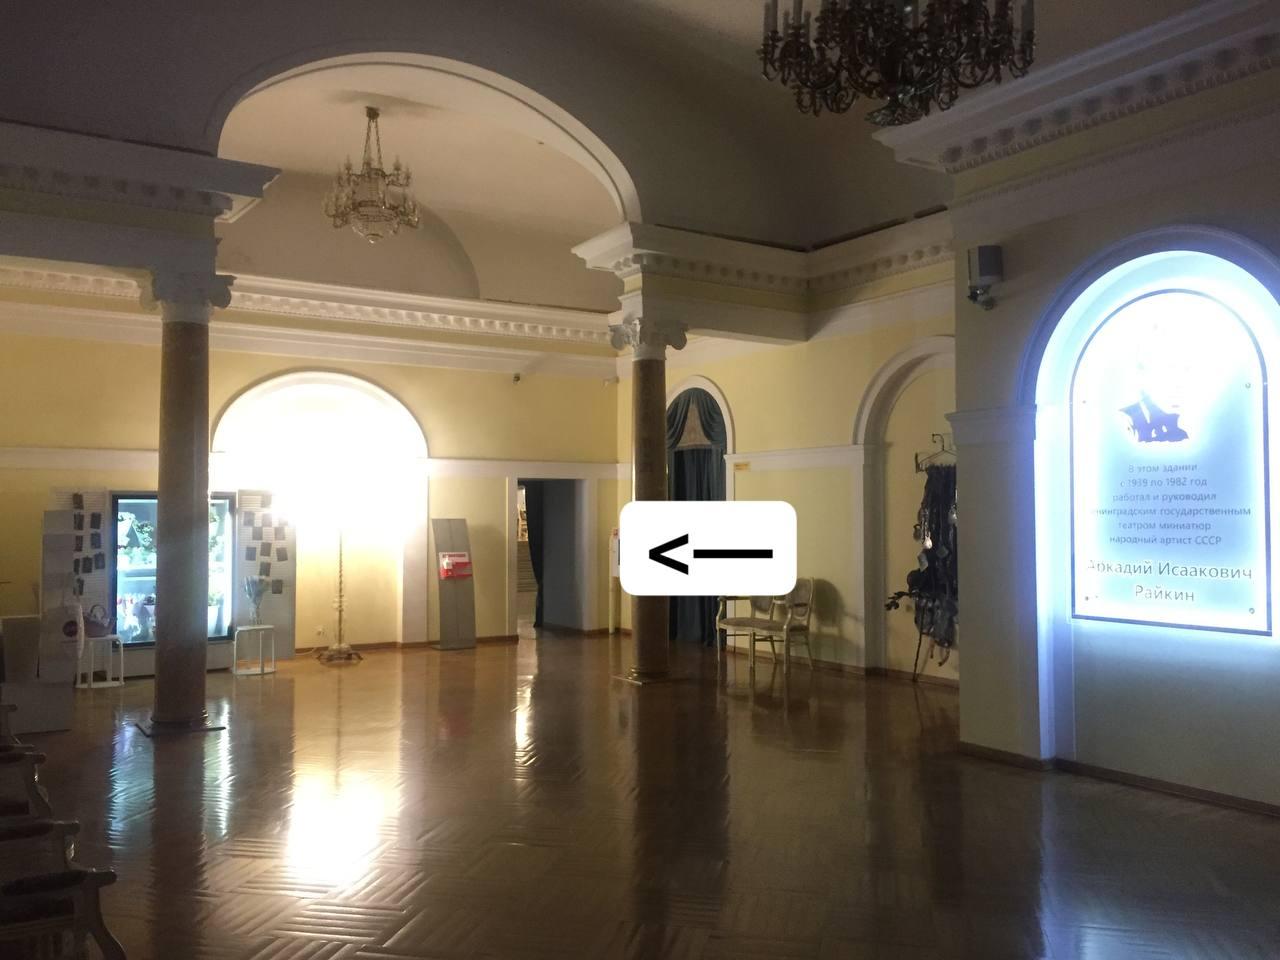 Специализированное санитарно-гигиеническое помещение расположено слева после входа во второе (бирюзовое) фойе театра